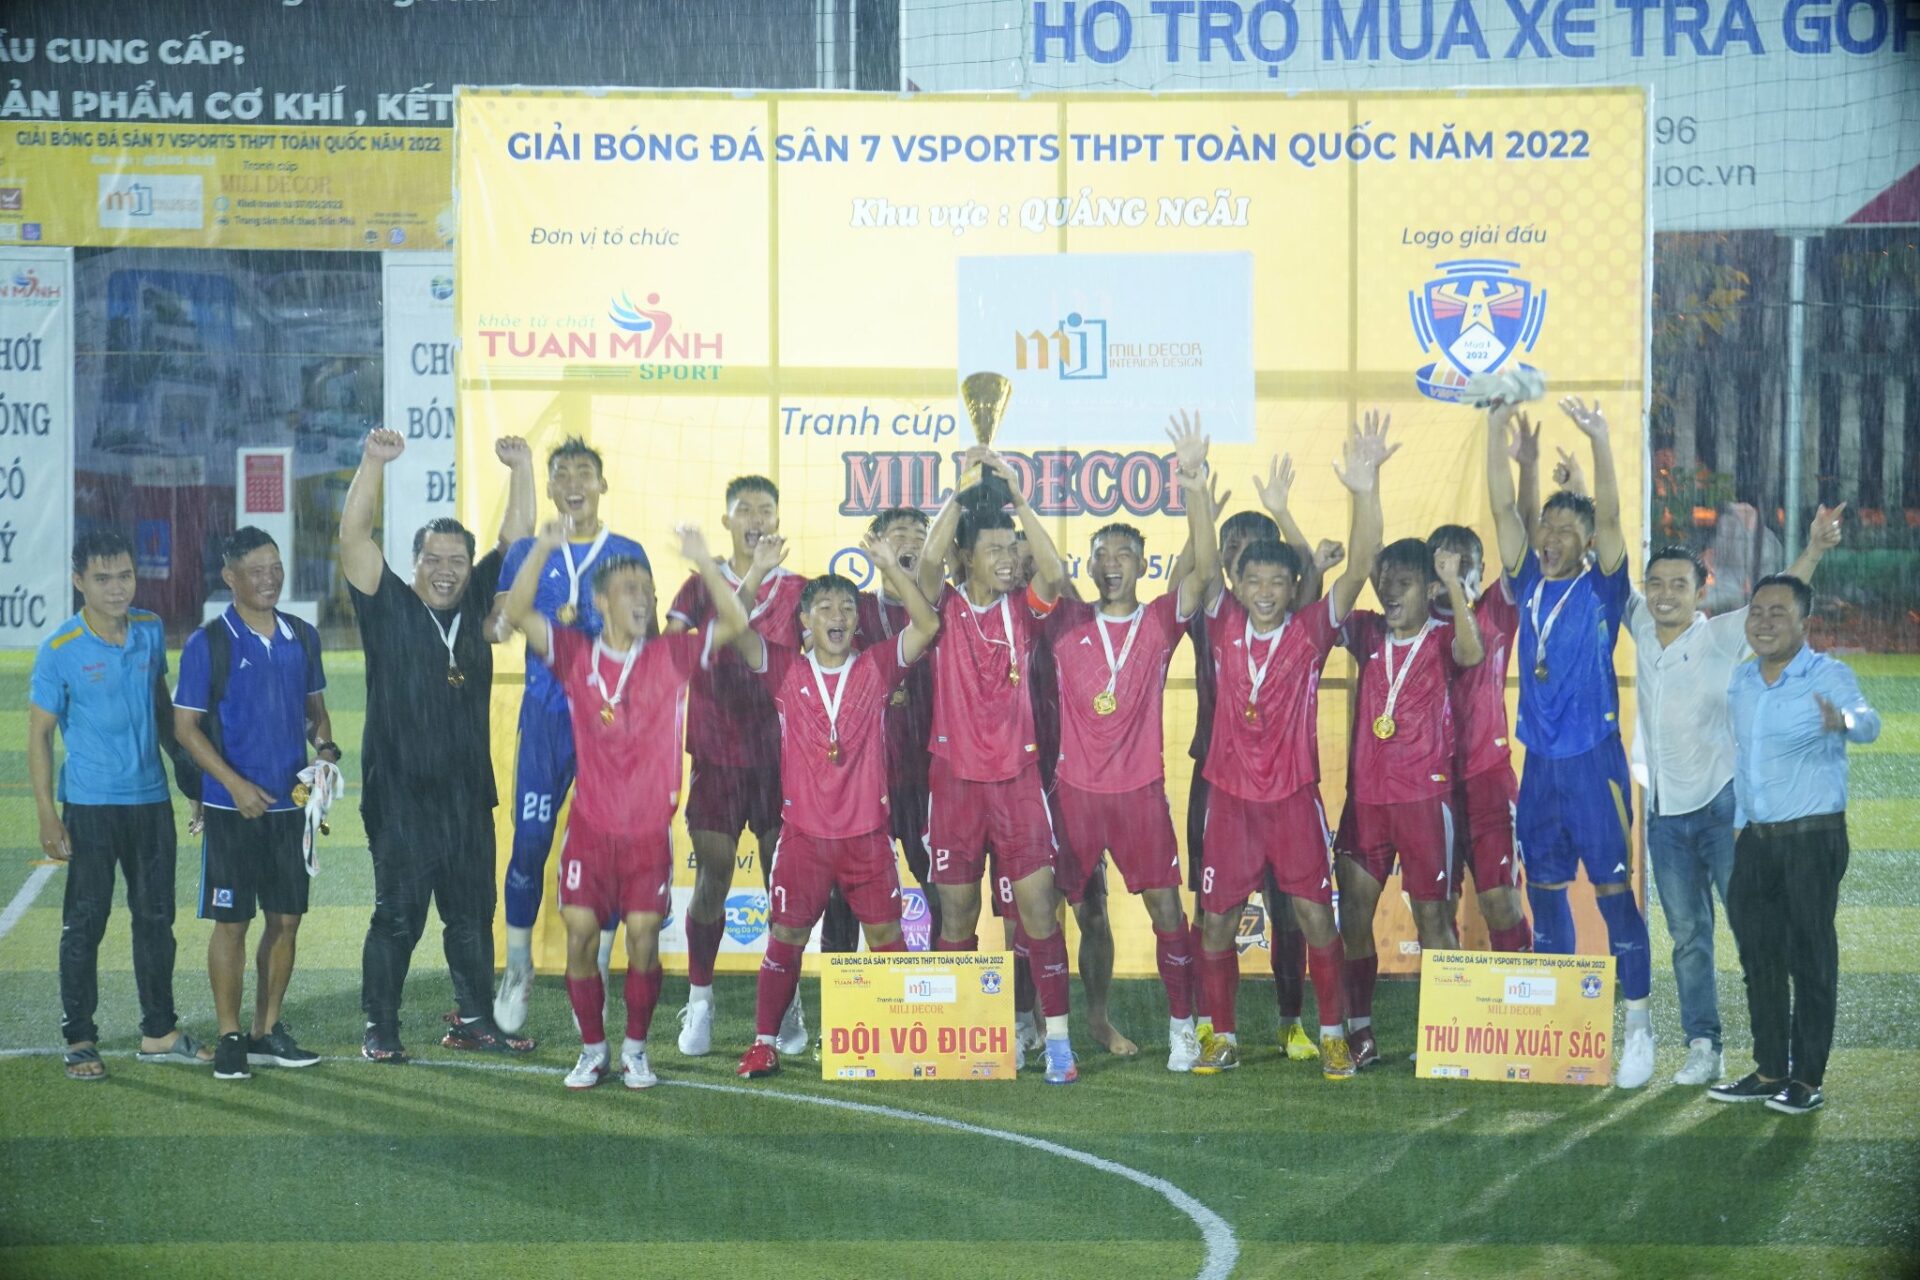 Đội vô địch VSports Quảng Ngãi 2022